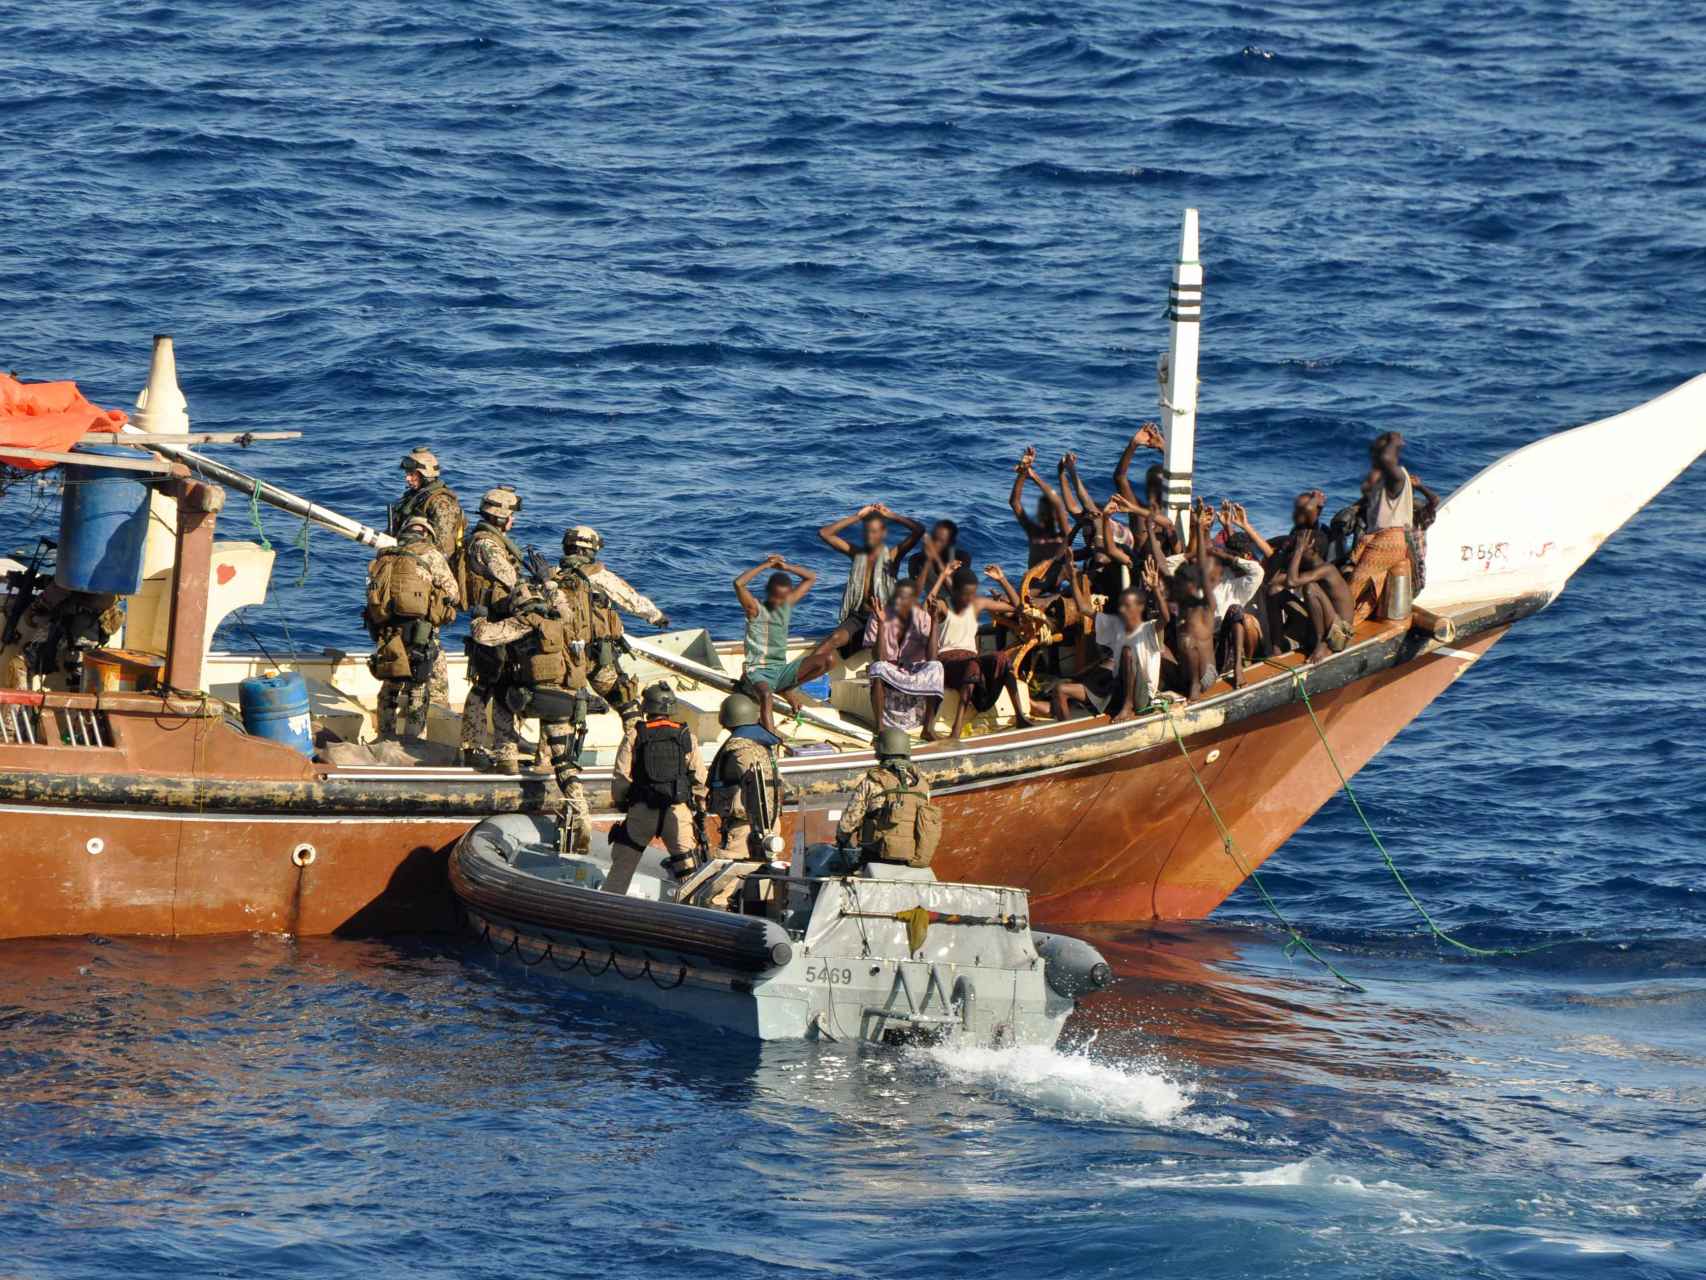 Intervenciones militares sobre piratas en el Índico